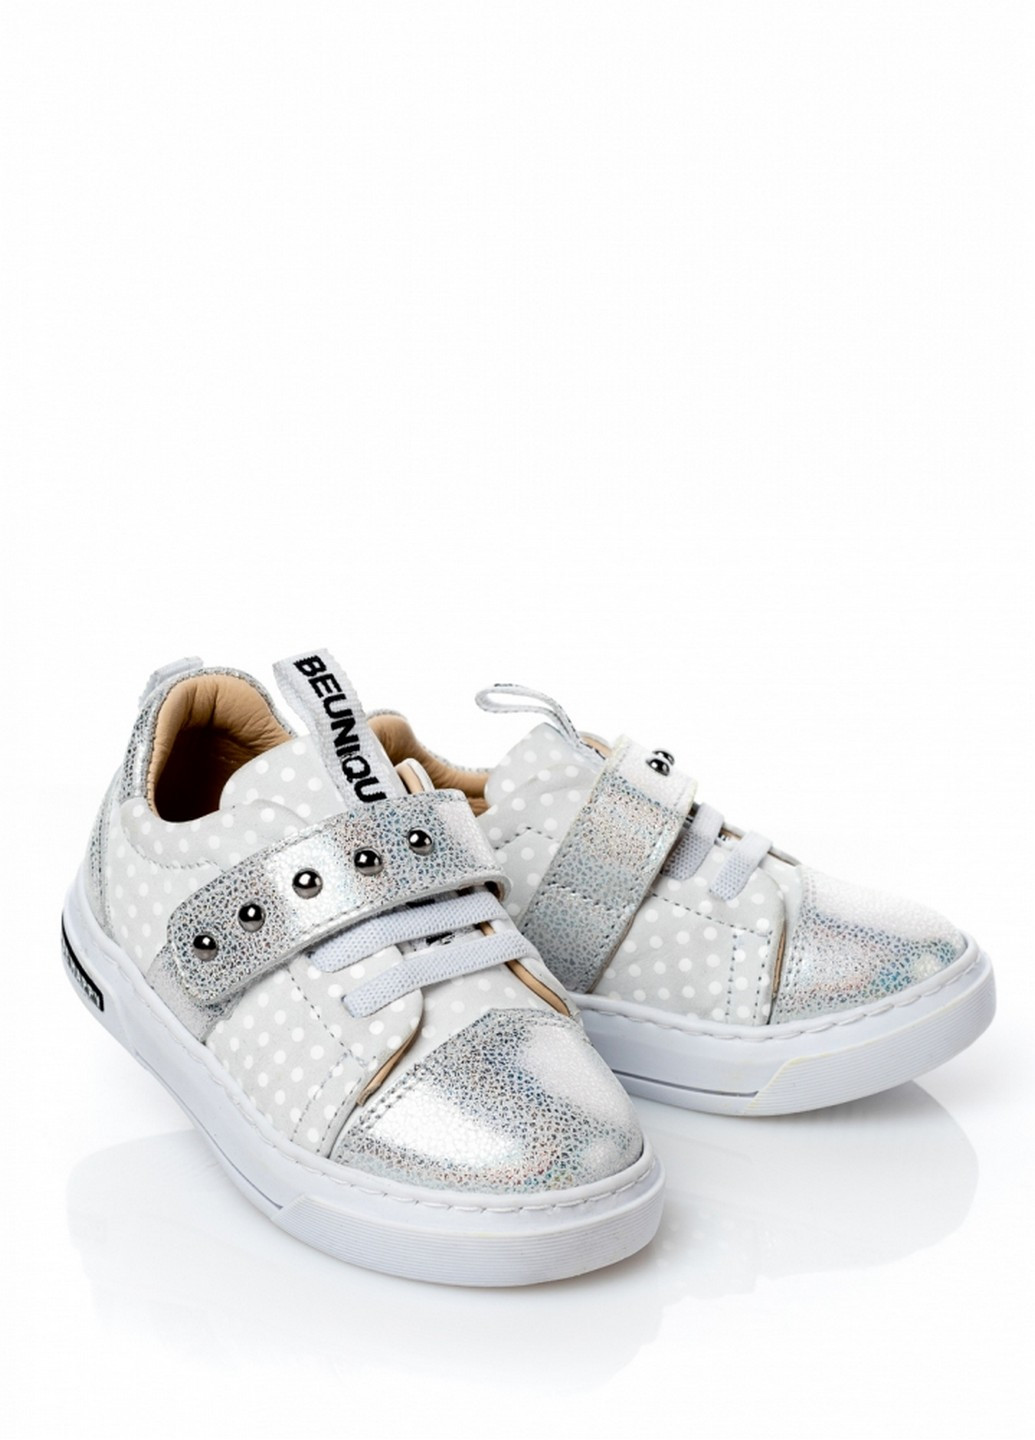 Срібні осінні кросівки для дівчинки Tutubi